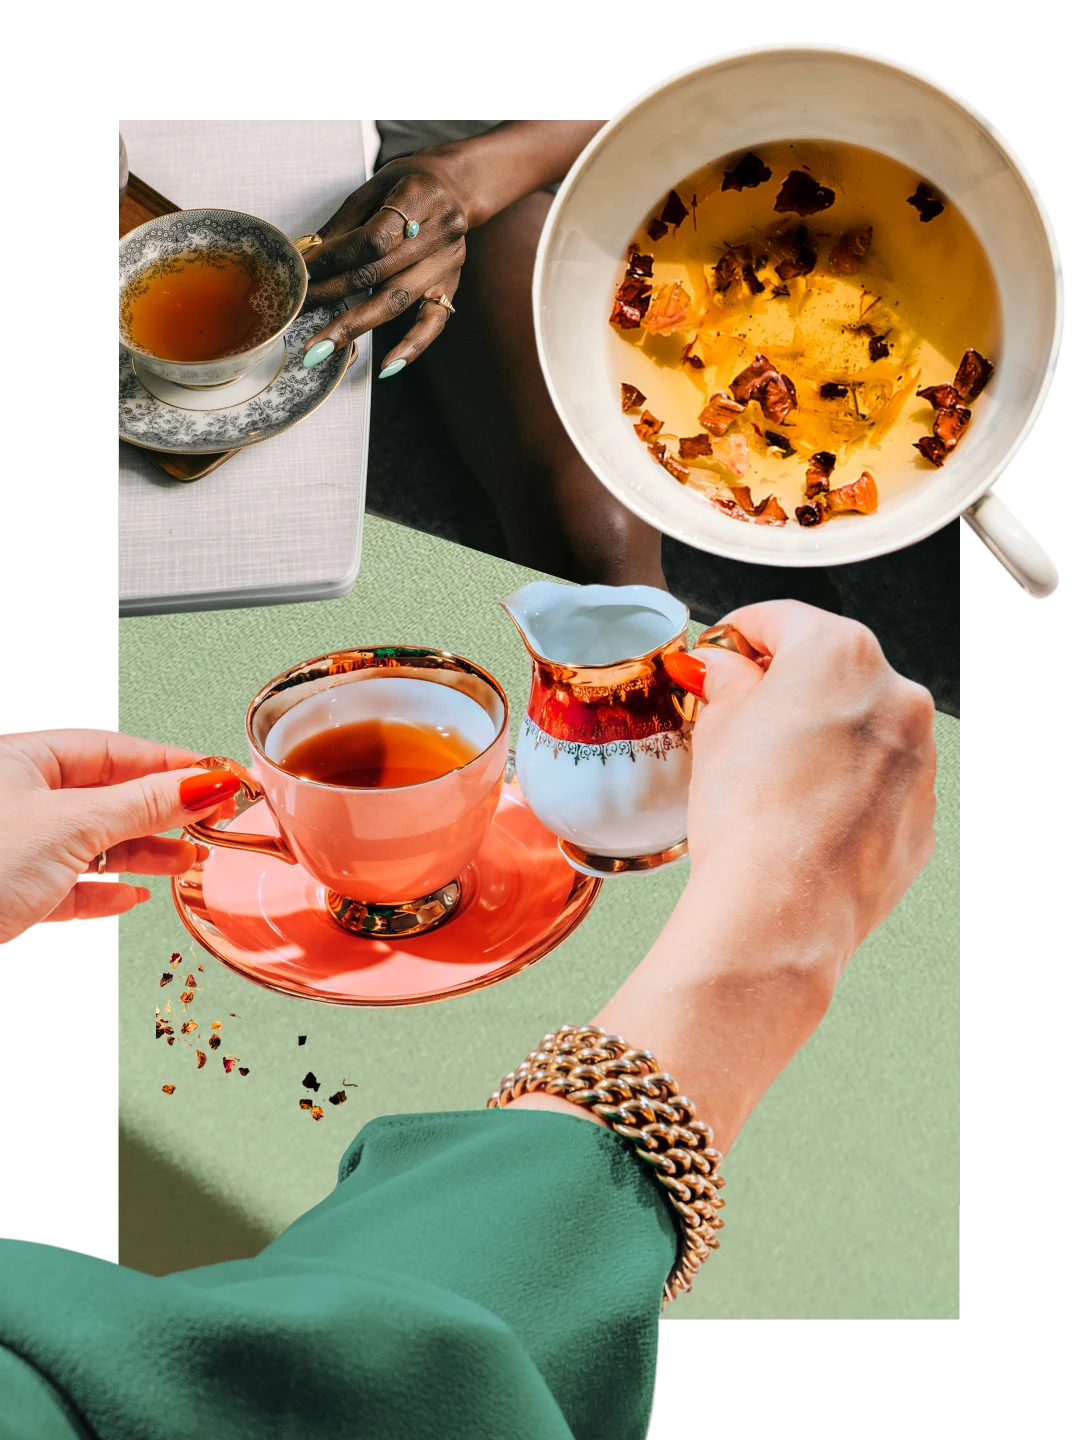 Collage de tasses remplies de thé ambré sur un fond vert clair. Main d'une personne blanche en manche verte soulevant un pot à crème avec un bord rouge. Main d'une personne noire tenant l'anse d'une tasse à thé ancienne.
